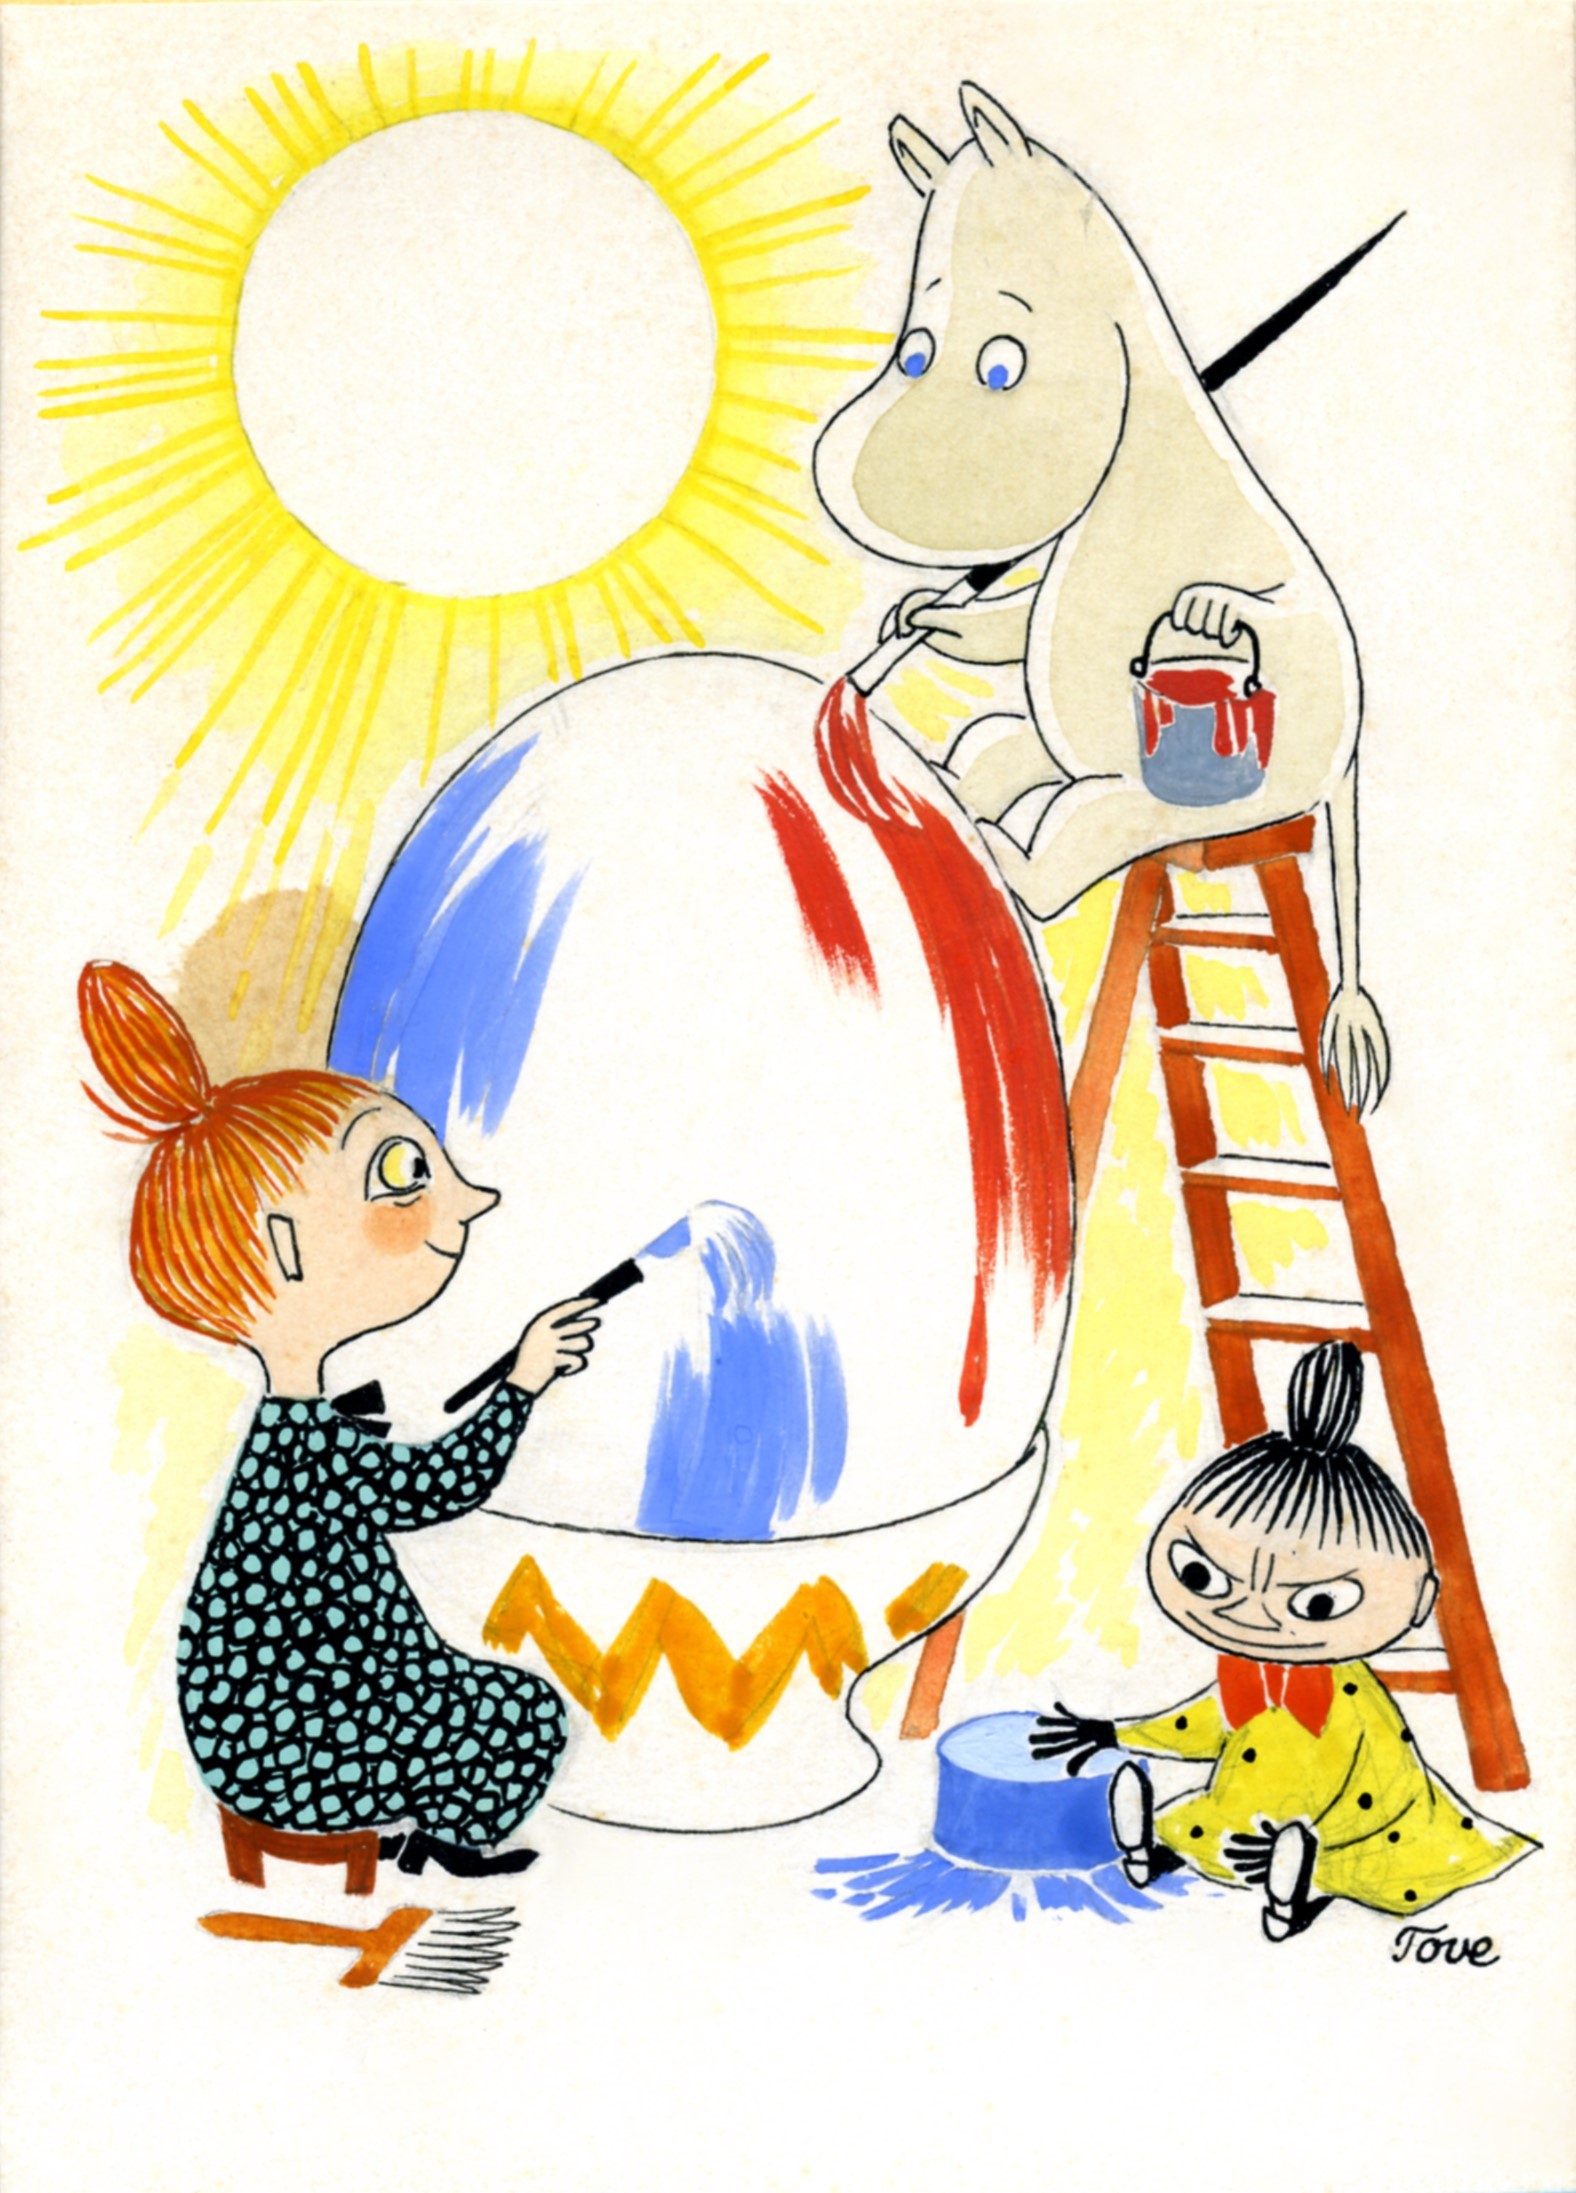 トーベ・ヤンソン≪イースターカード原画≫　1940年頃　グワッシュ・インク・紙　ムーミンキャラクターズ社 (C)Moomin Characters TM